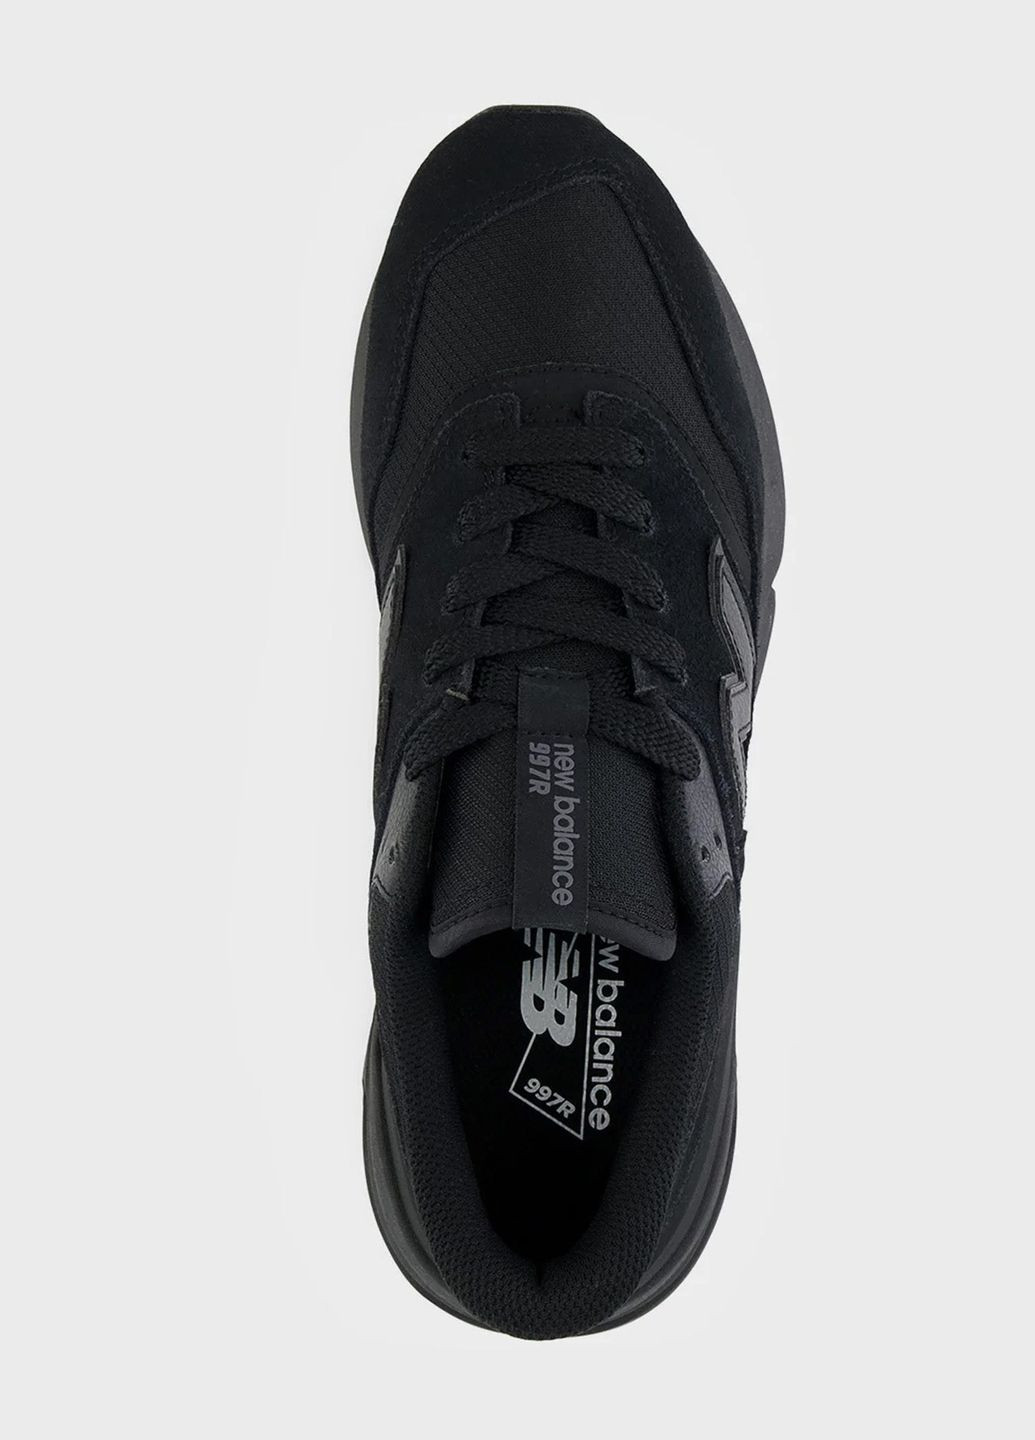 Черные всесезонные мужские кроссовки оригинал nb 997 u997rfb New Balance